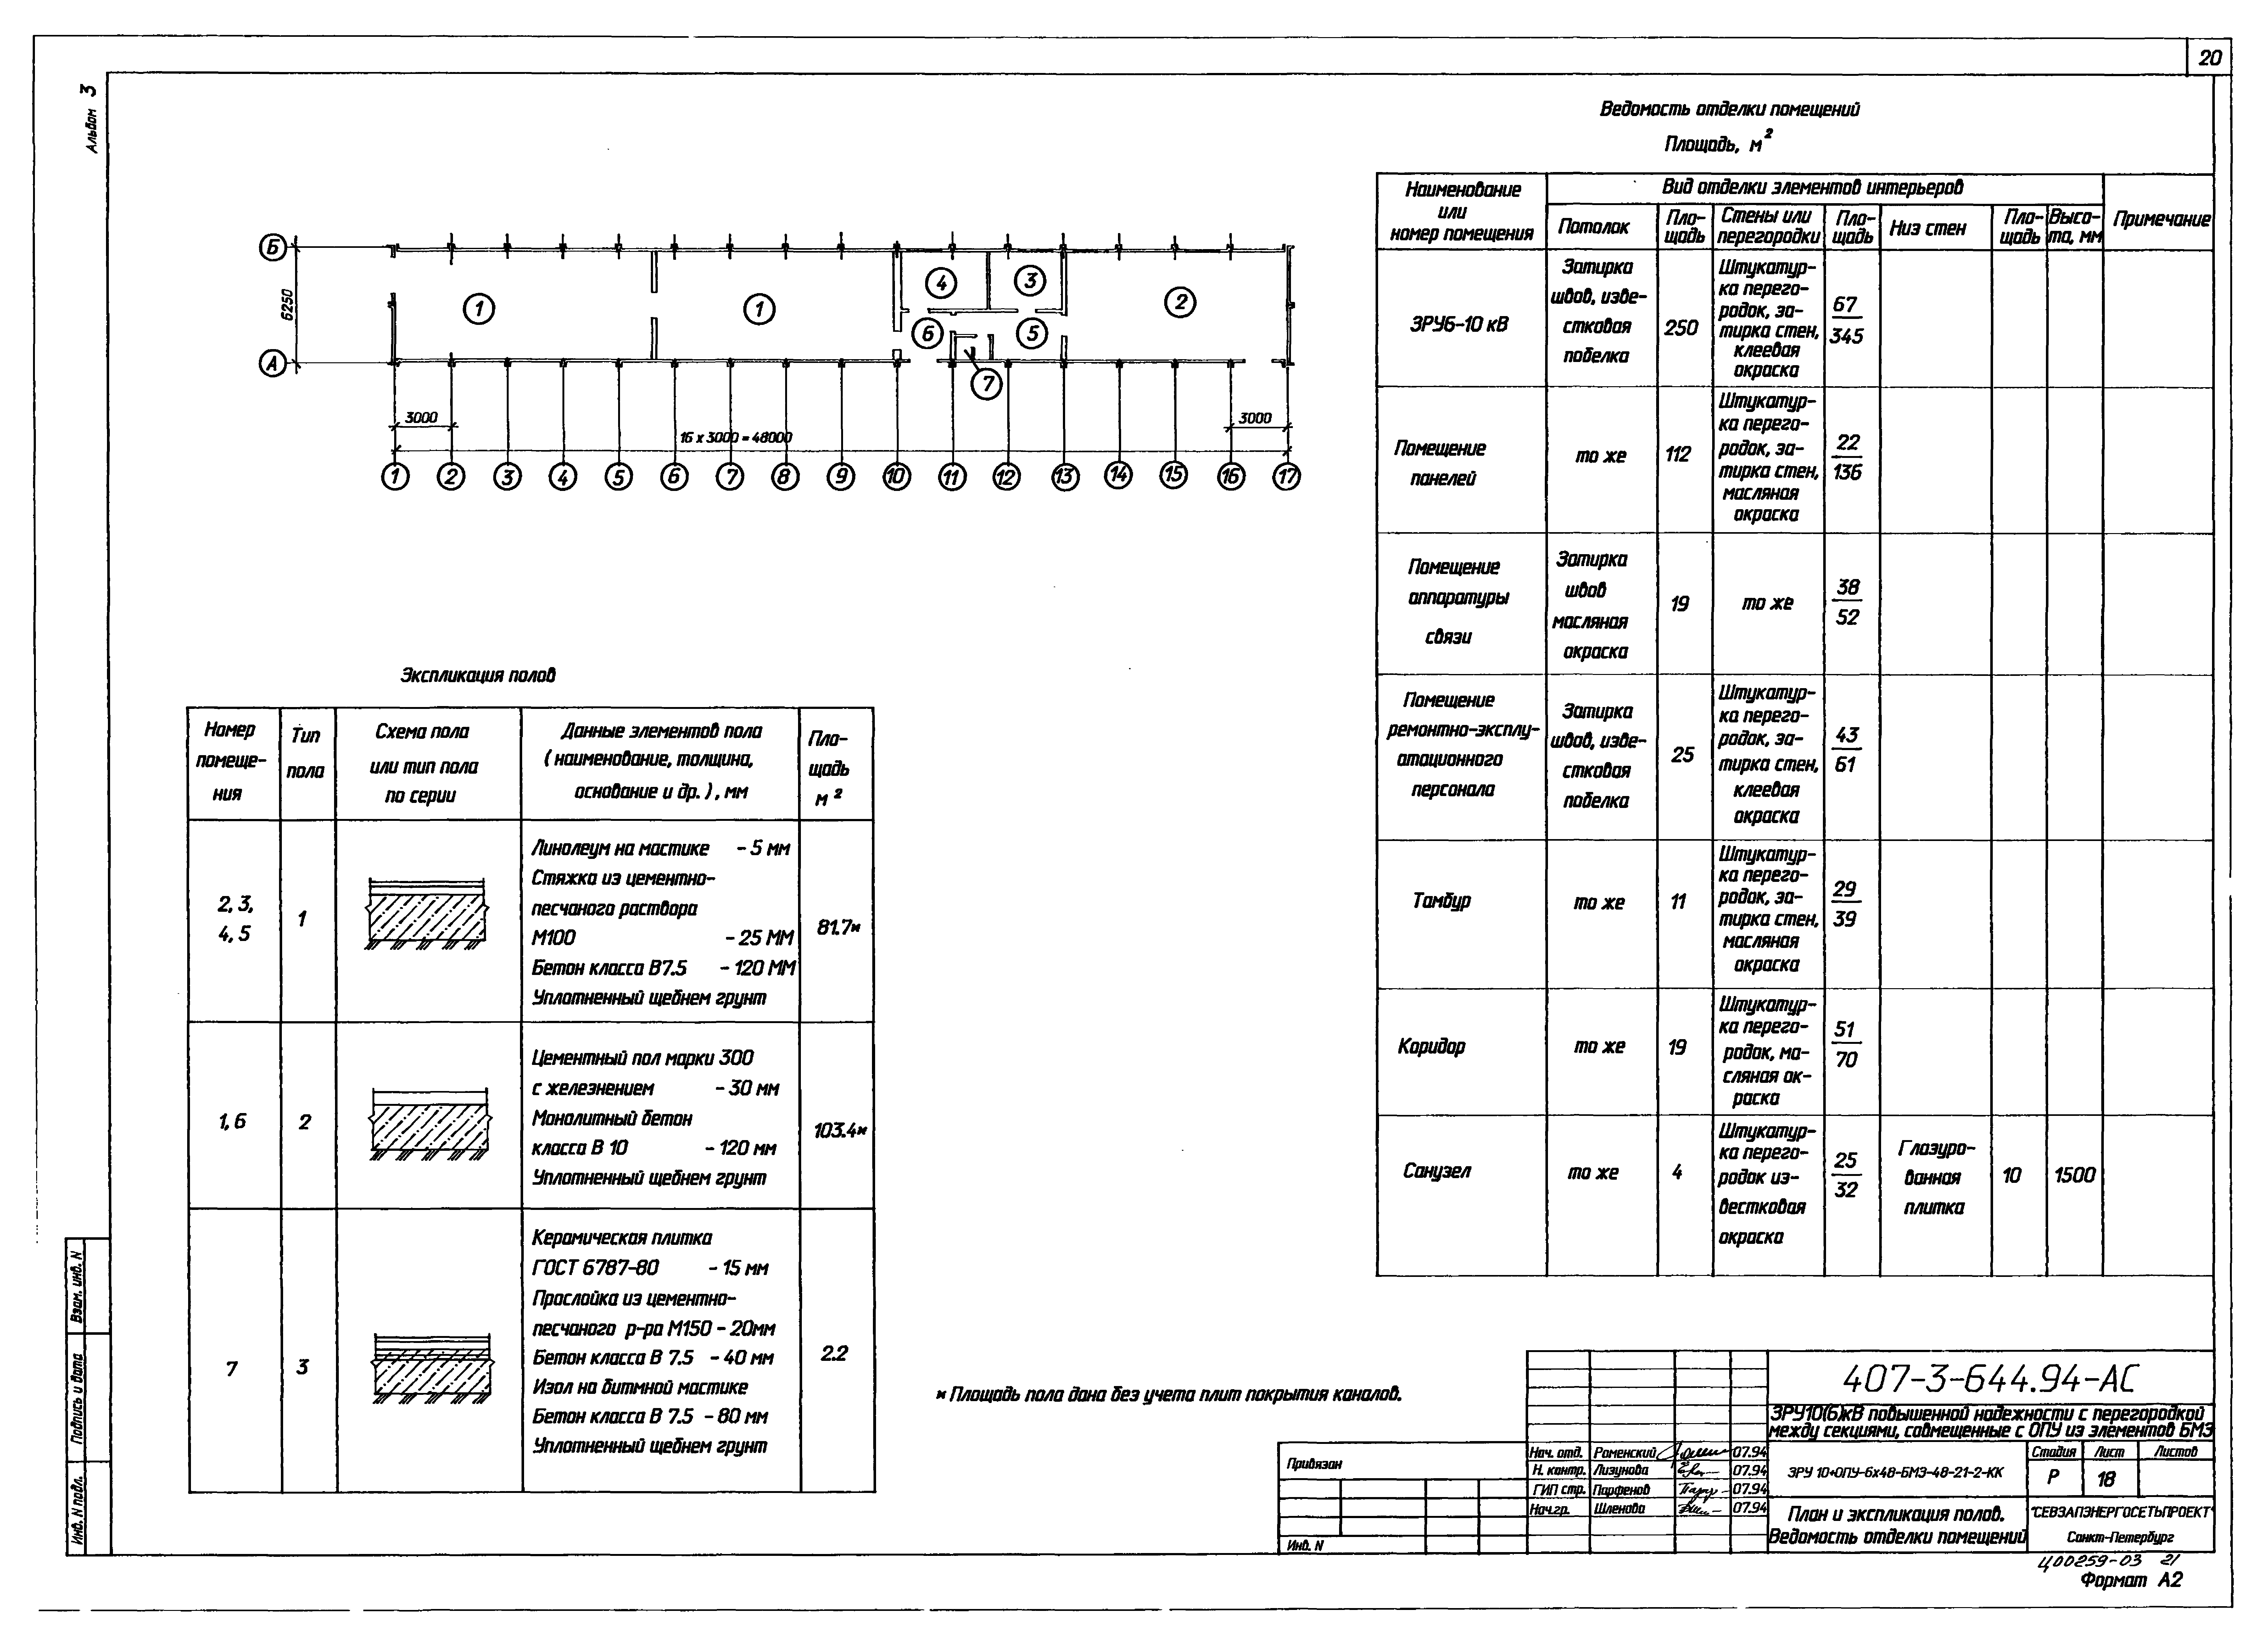 Типовой проект 407-3-644.94